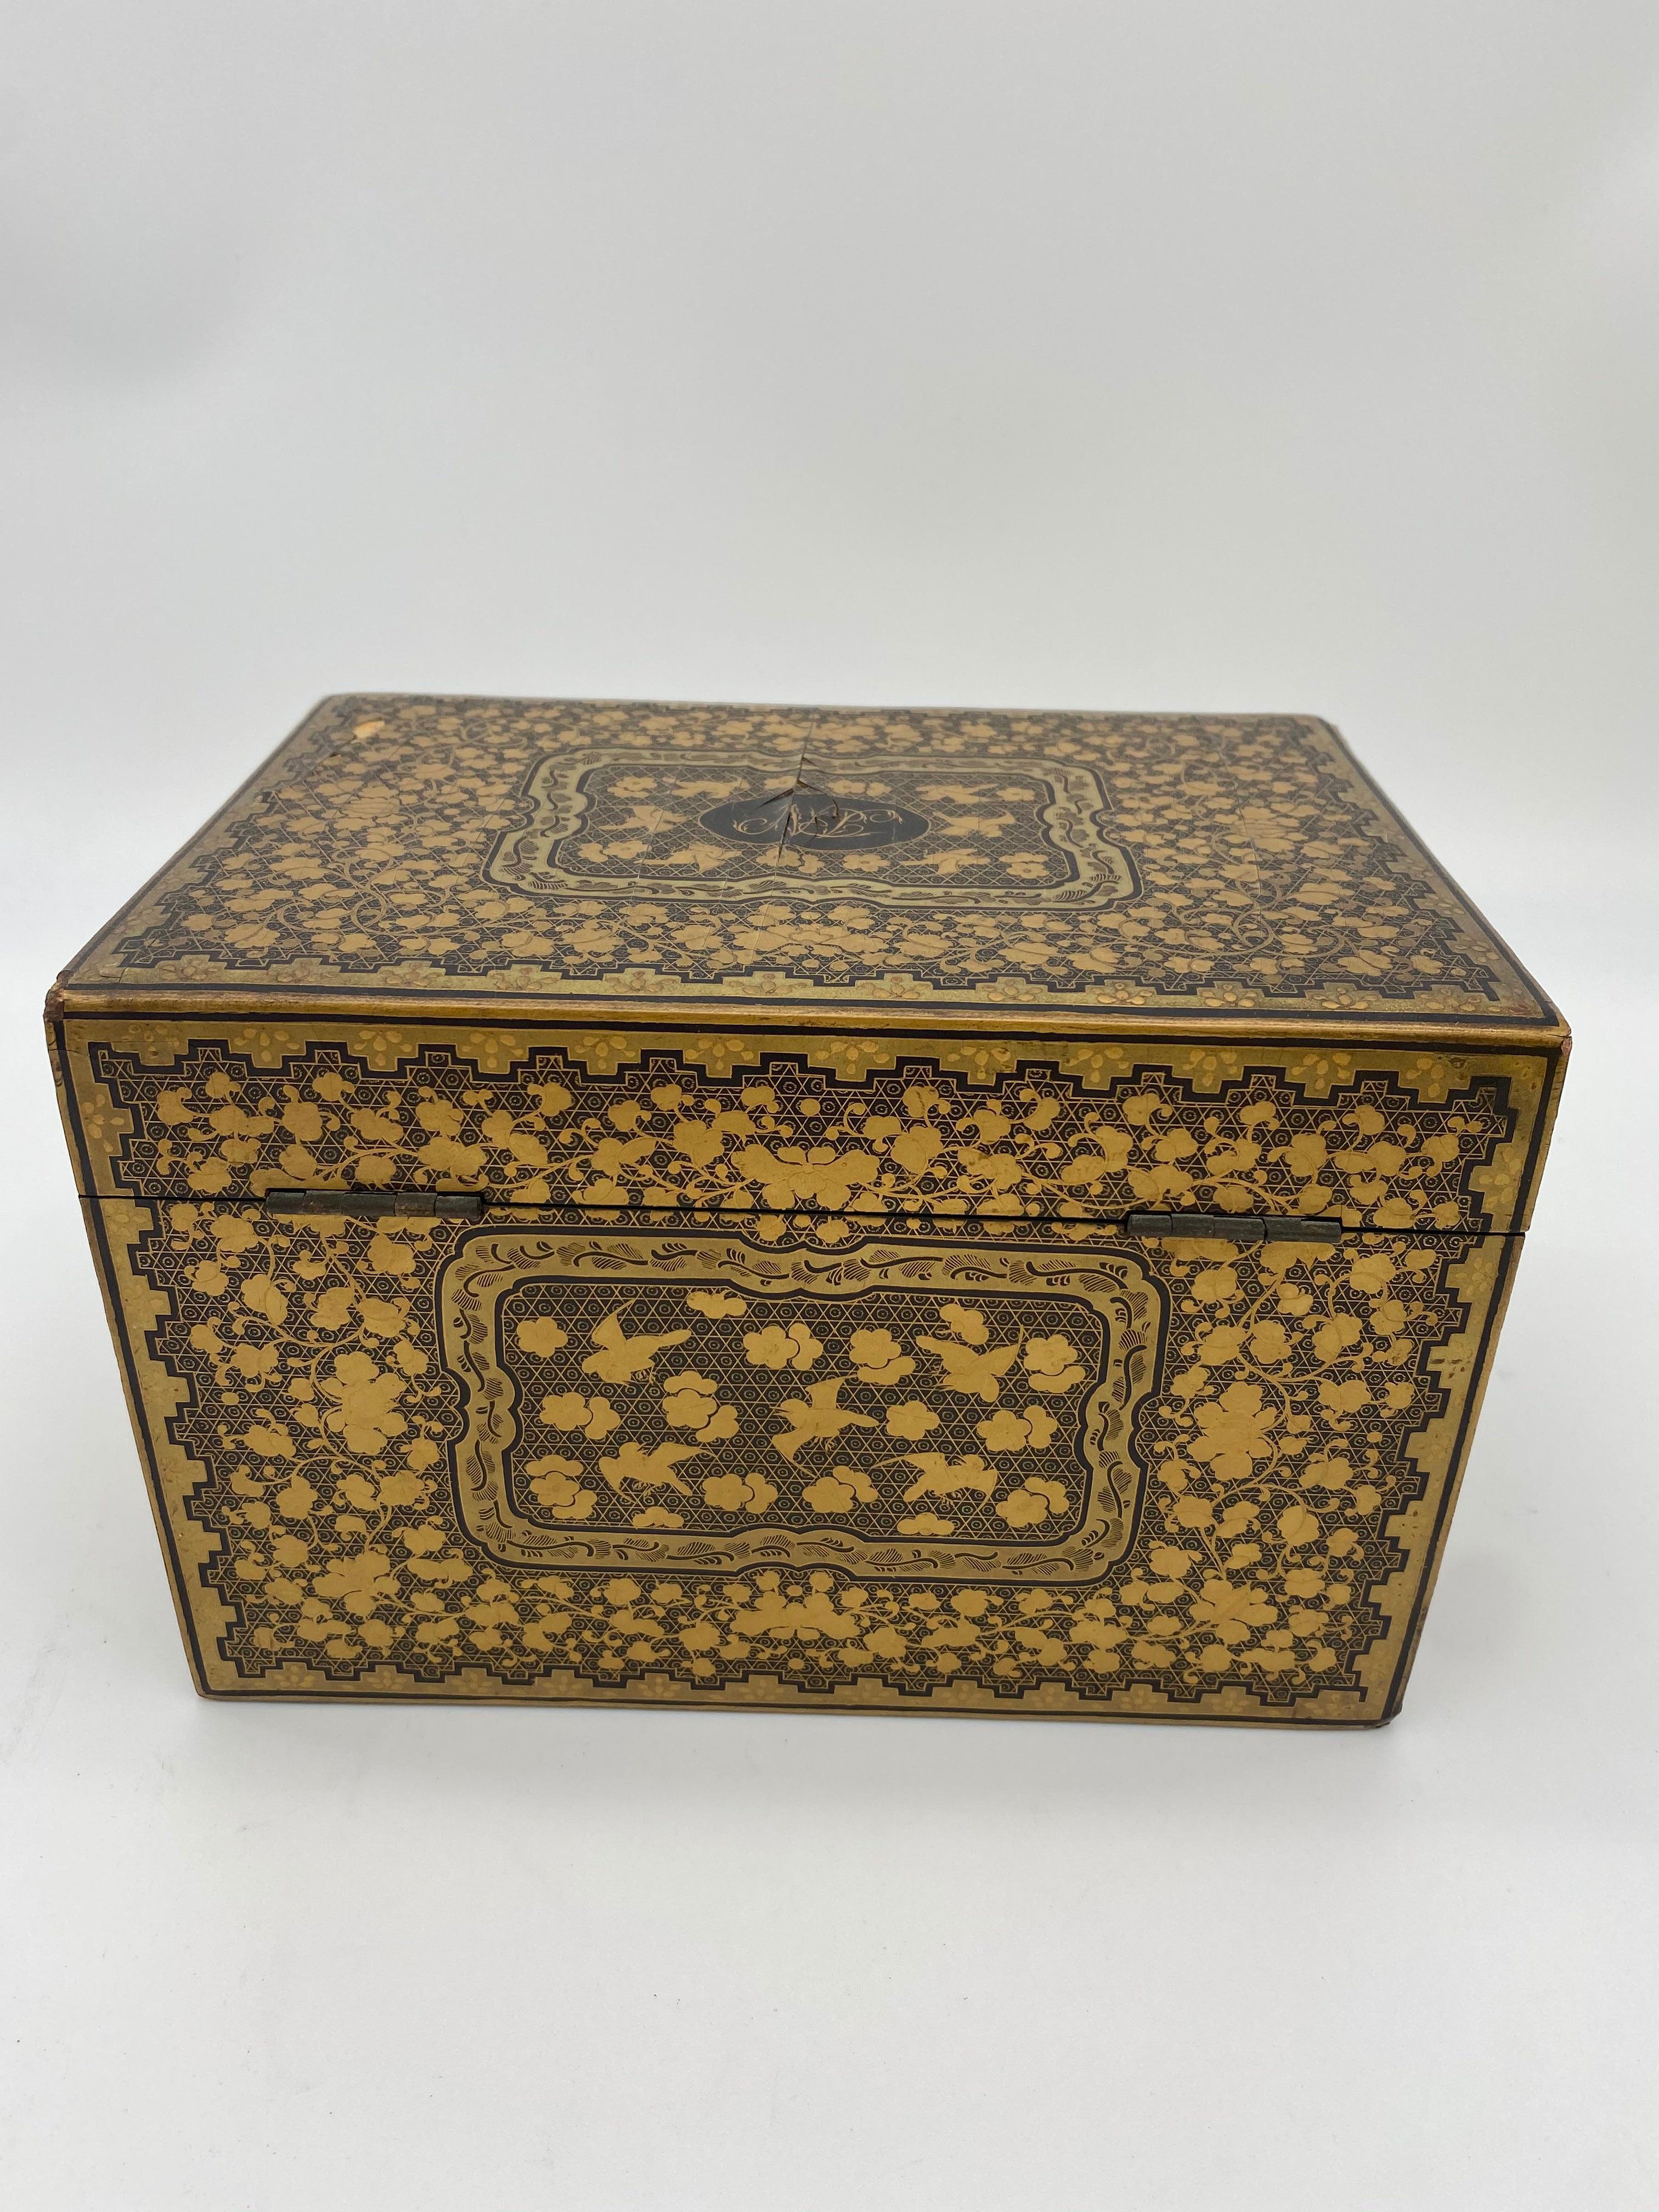 boite à thé chinoise en laque noire dorée à couvercle relevable du 19ème siècle, petite et belle pièce.